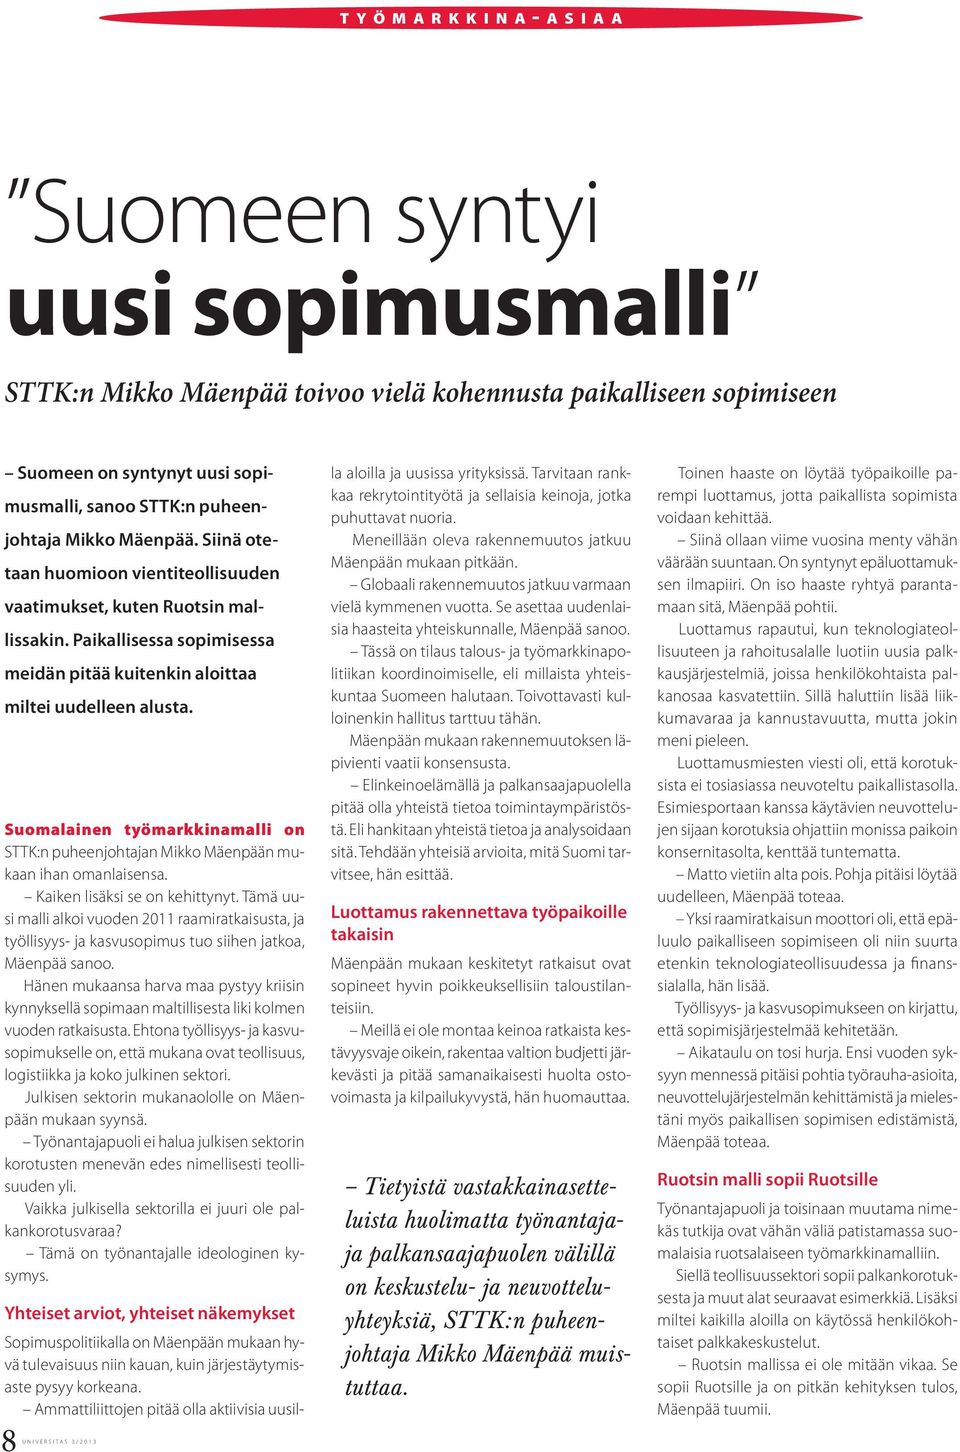 Suomalainen työmarkkinamalli on STTK:n puheenjohtajan Mikko Mäenpään mukaan ihan omanlaisensa. Kaiken lisäksi se on kehittynyt.